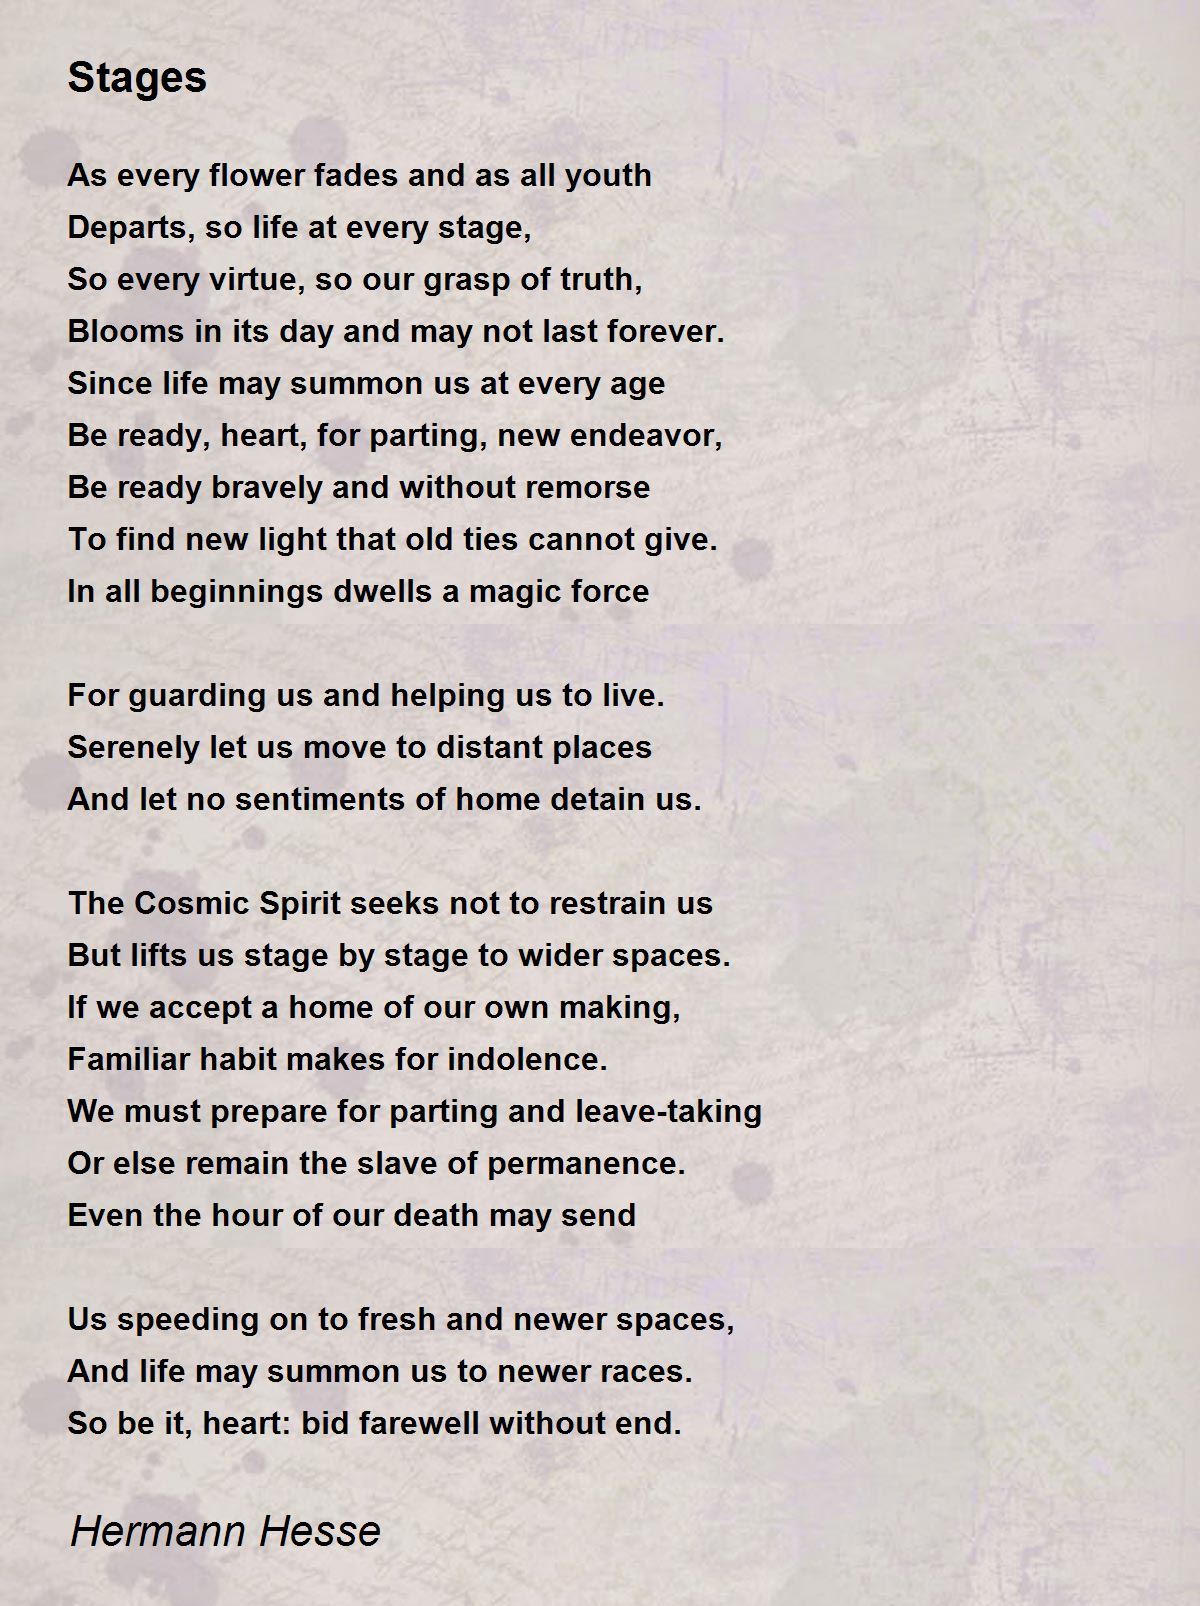 Stages Poem By Hermann Hesse